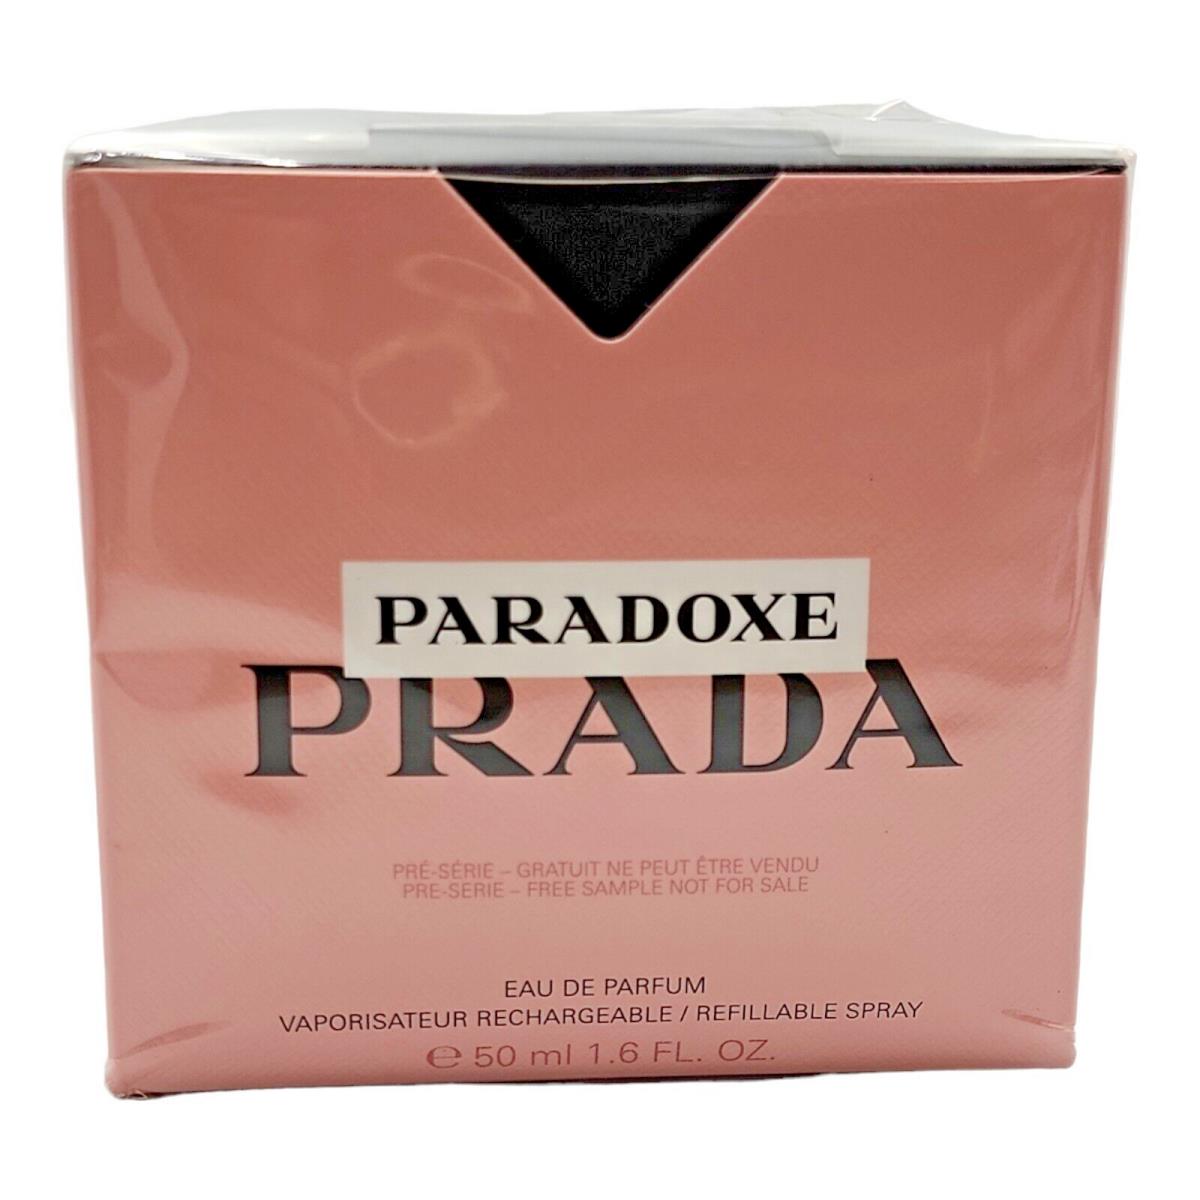 Prada Paradoxe Eau De Parfum Refillable Spray 1.6 oz 50 ml Women